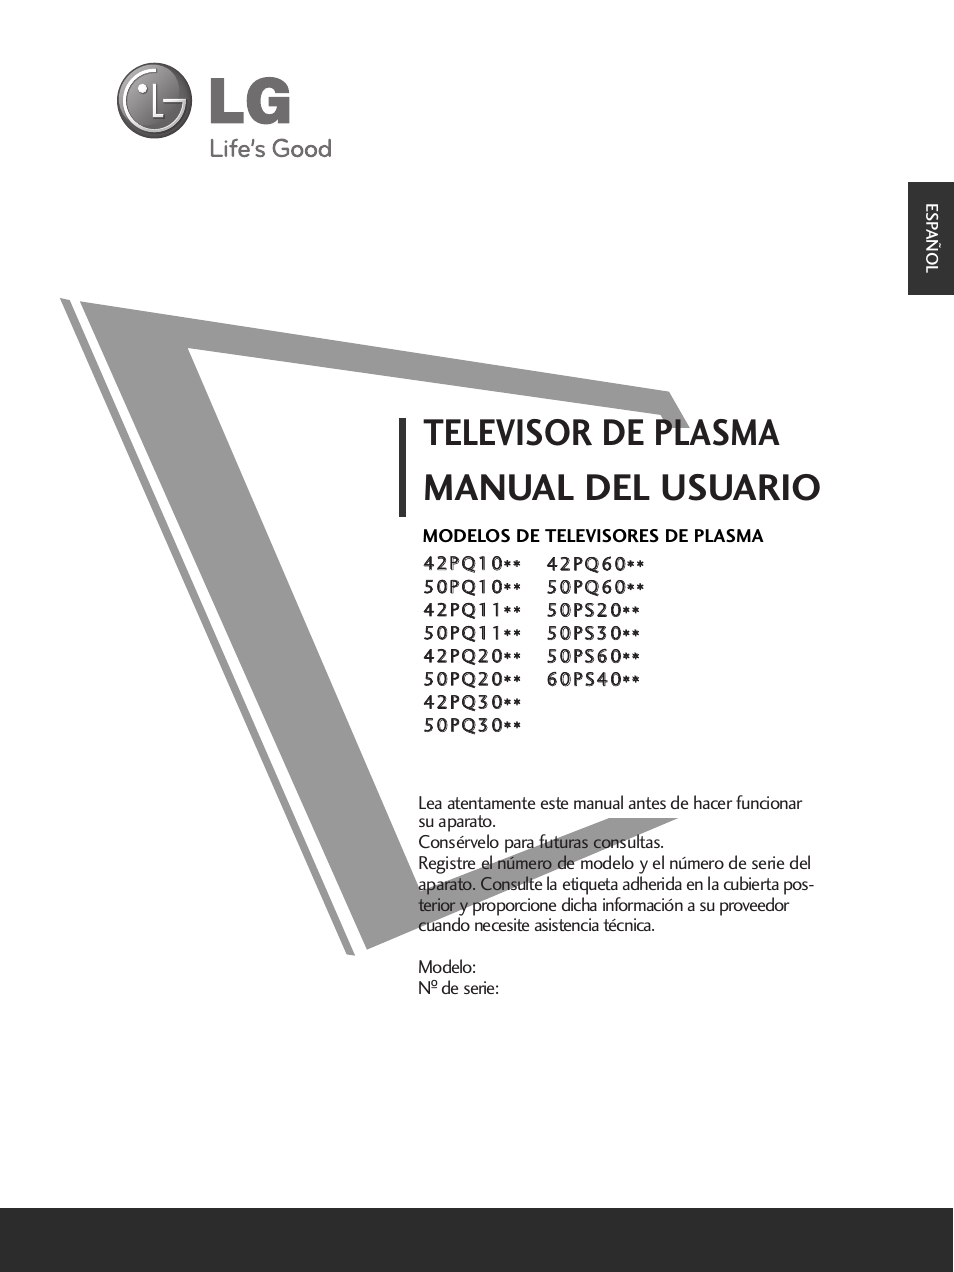 LG 50PS3000 Manual del usuario | Páginas: 124